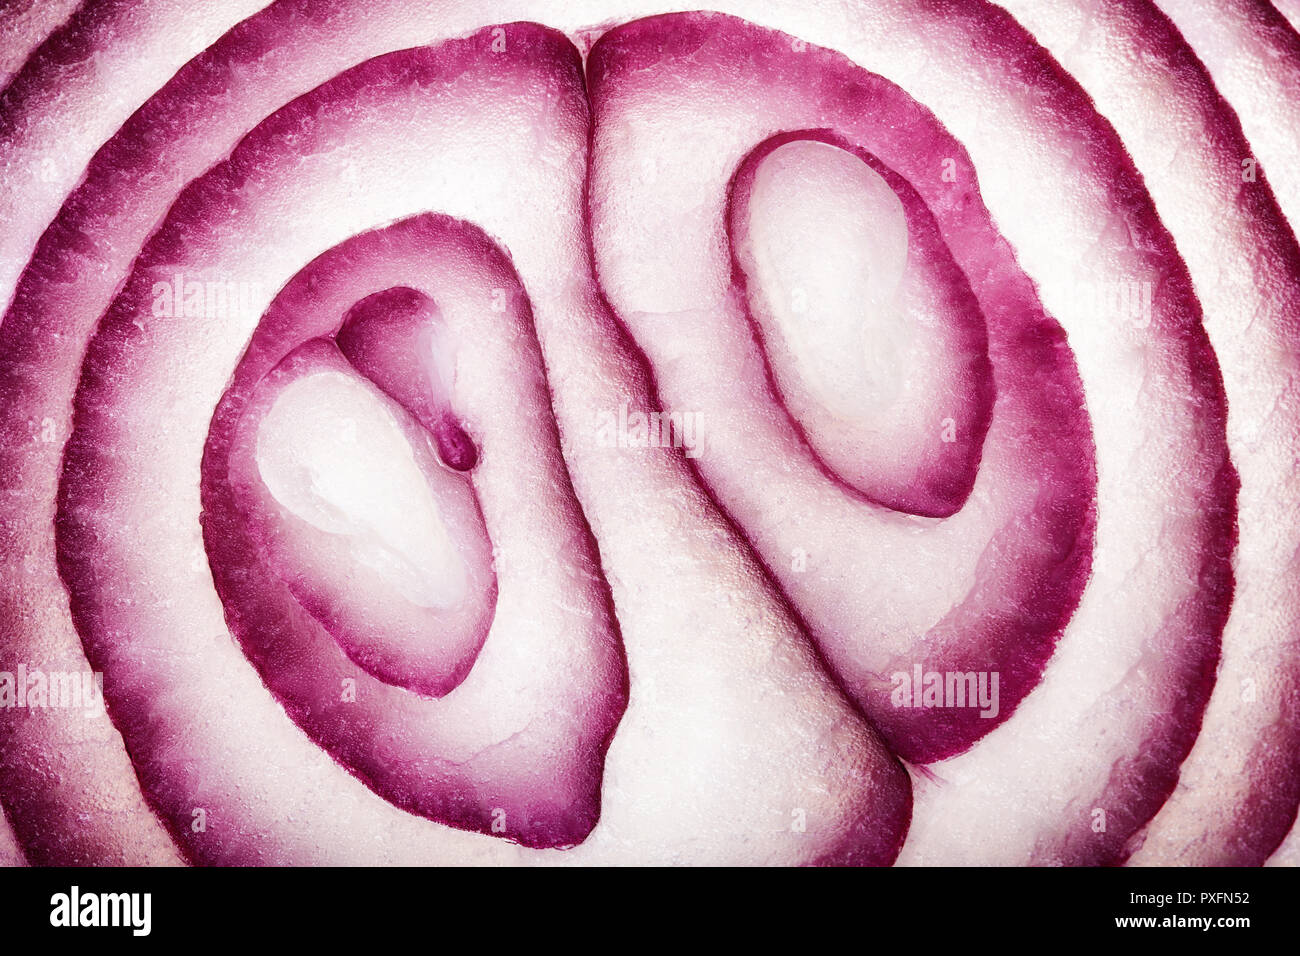 Abstract Art alimentaire Modèle d'oignon rouge éventail photographié close-up et full frame Banque D'Images